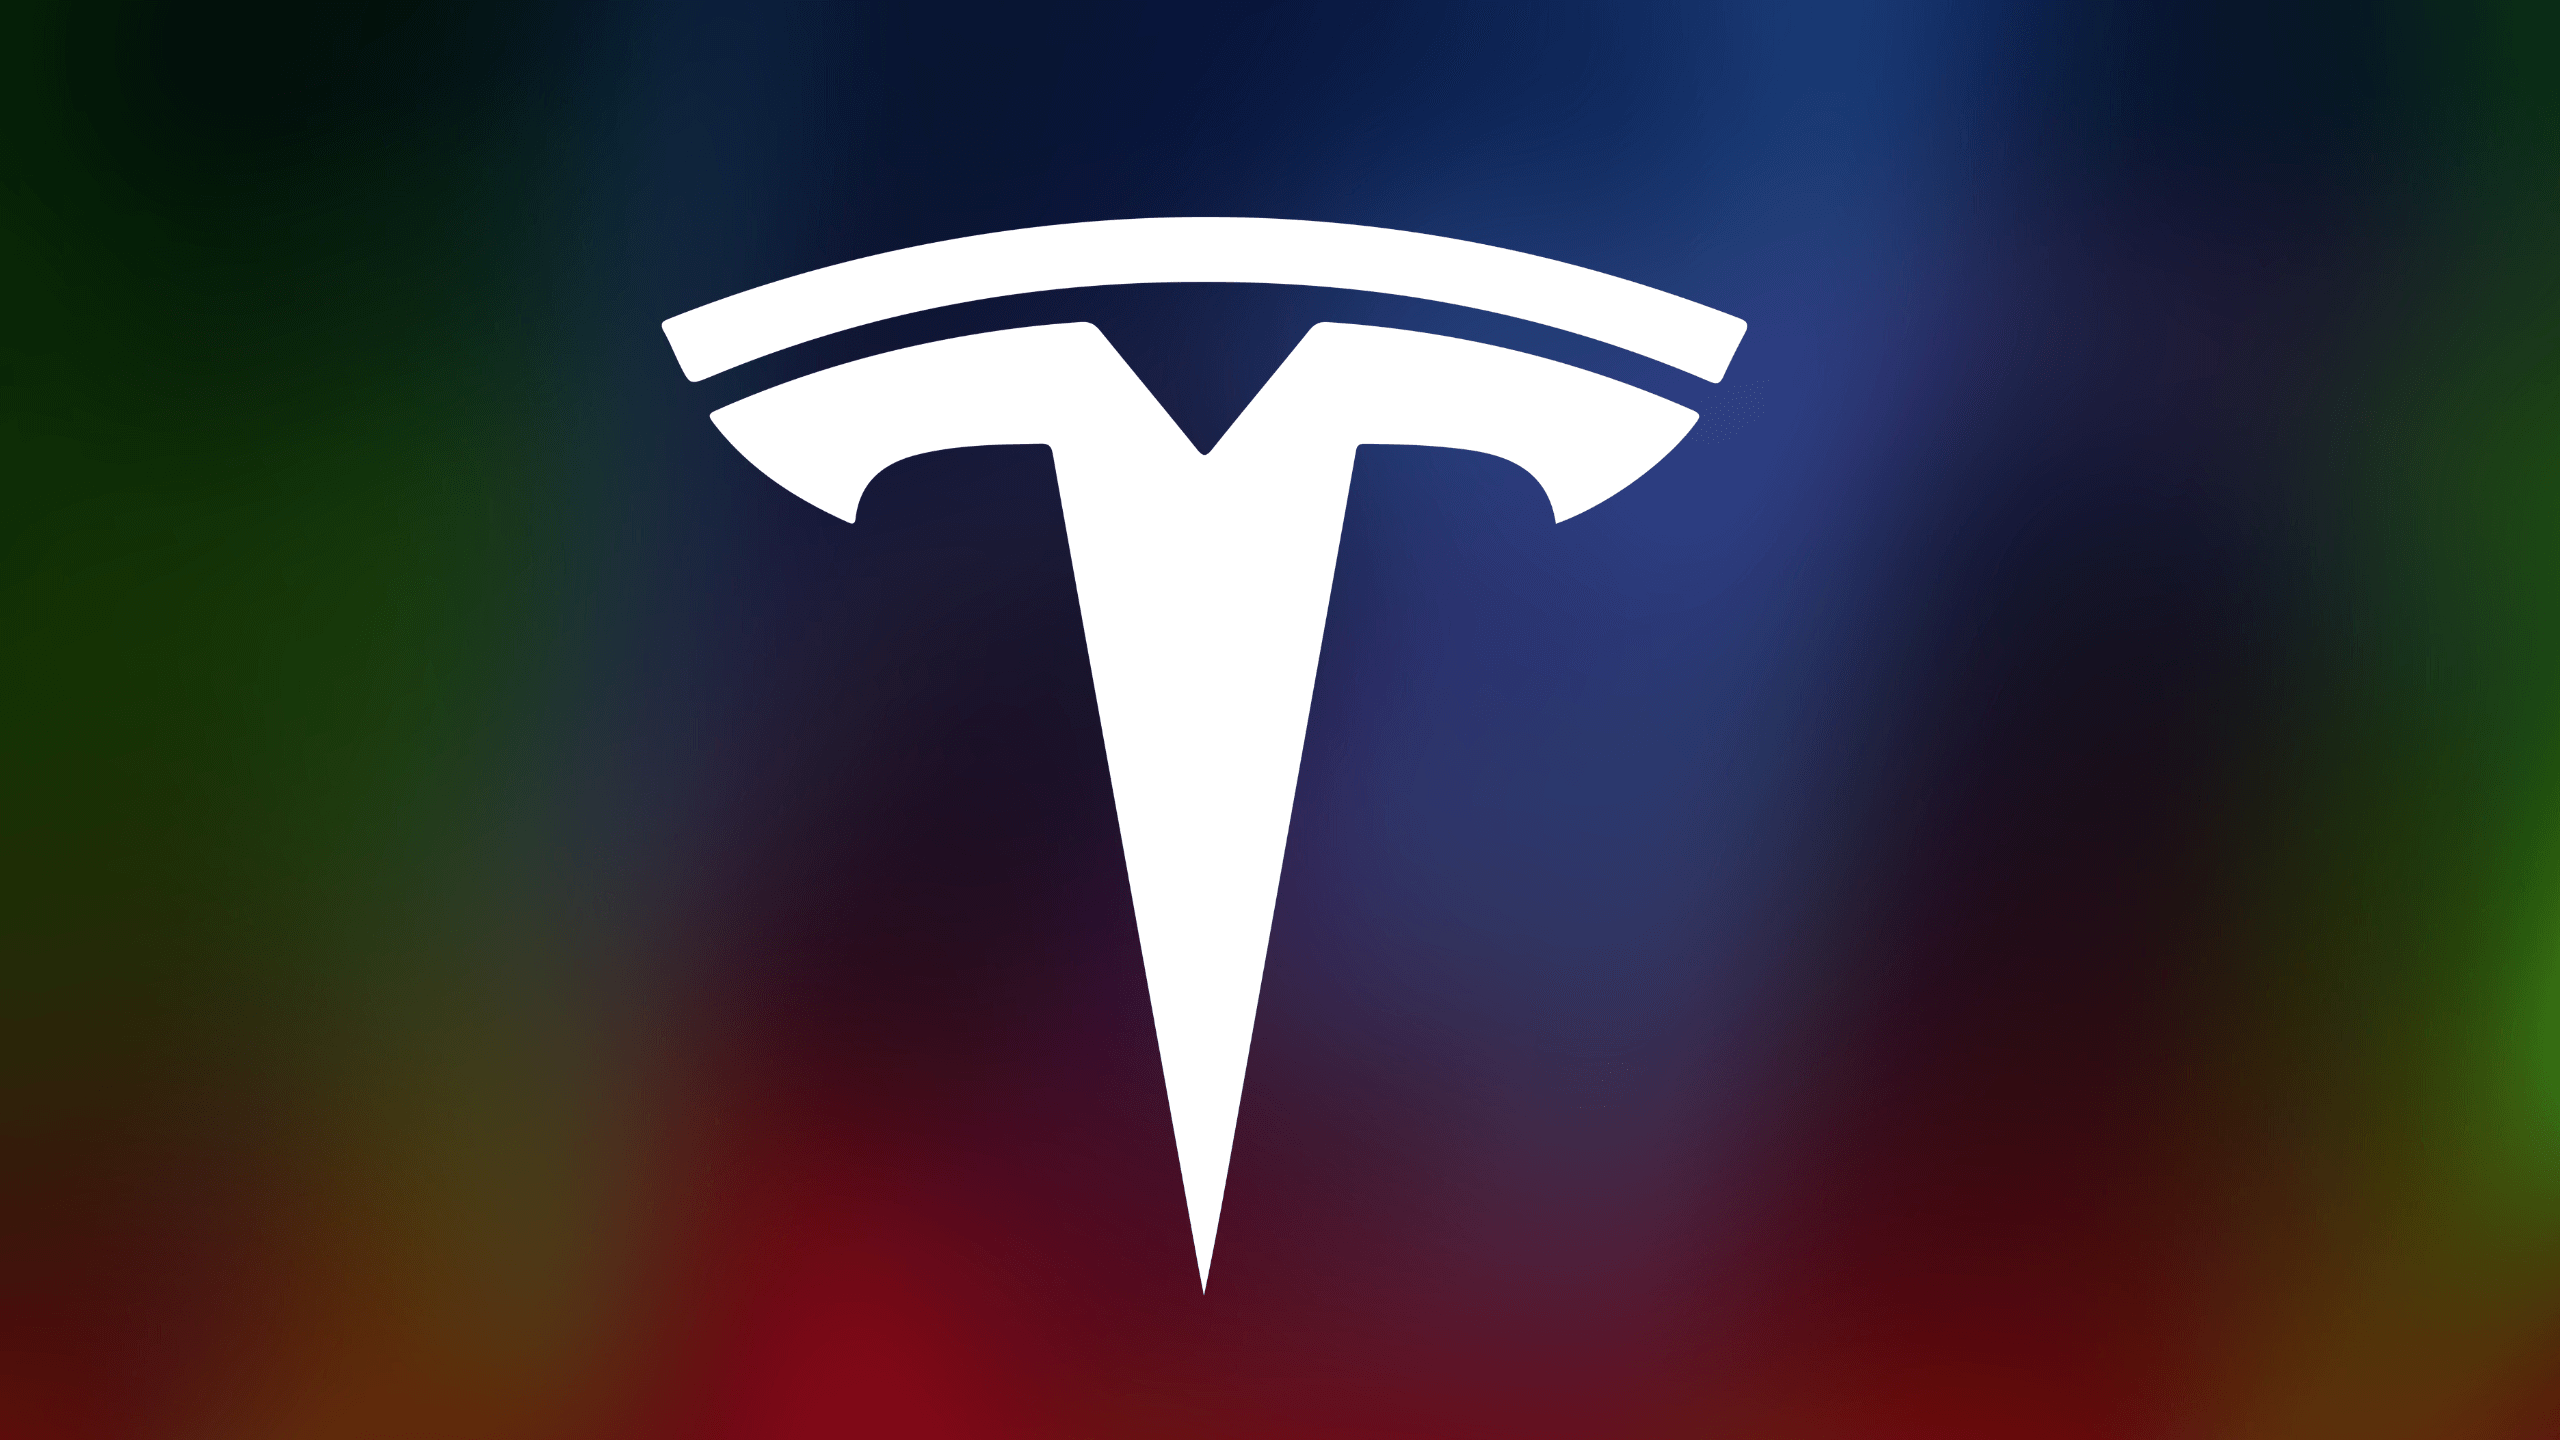 Mata saham Tesla mungkin berubah apabila pelabur menjadi optimis